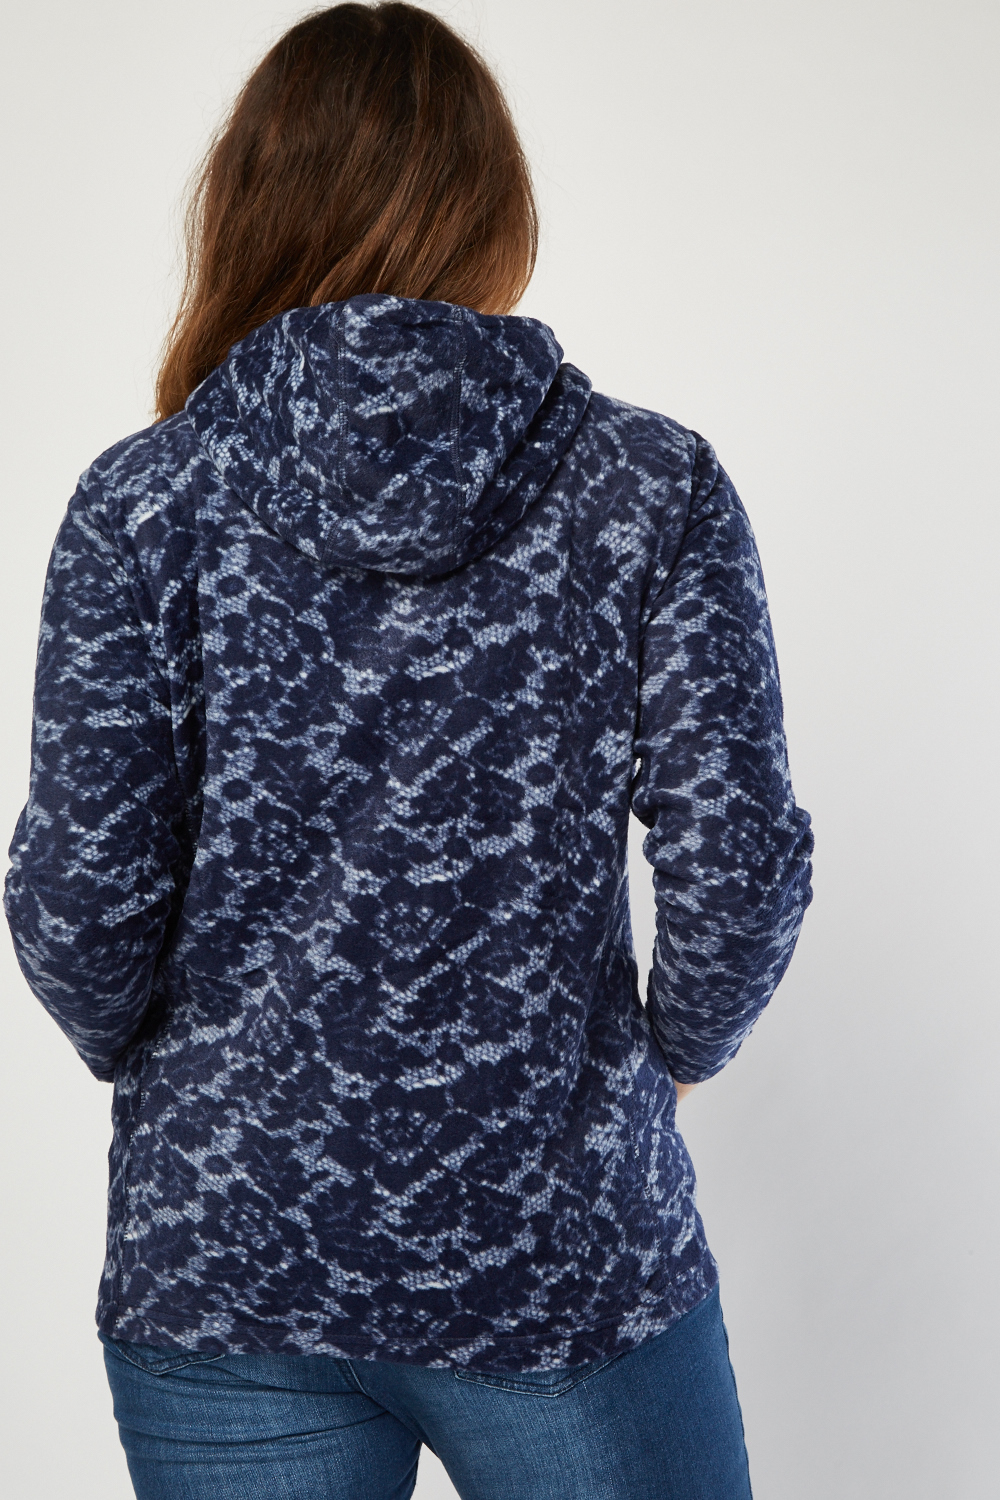 Lace Pattern Hooded Fleece Jacket - Just $7